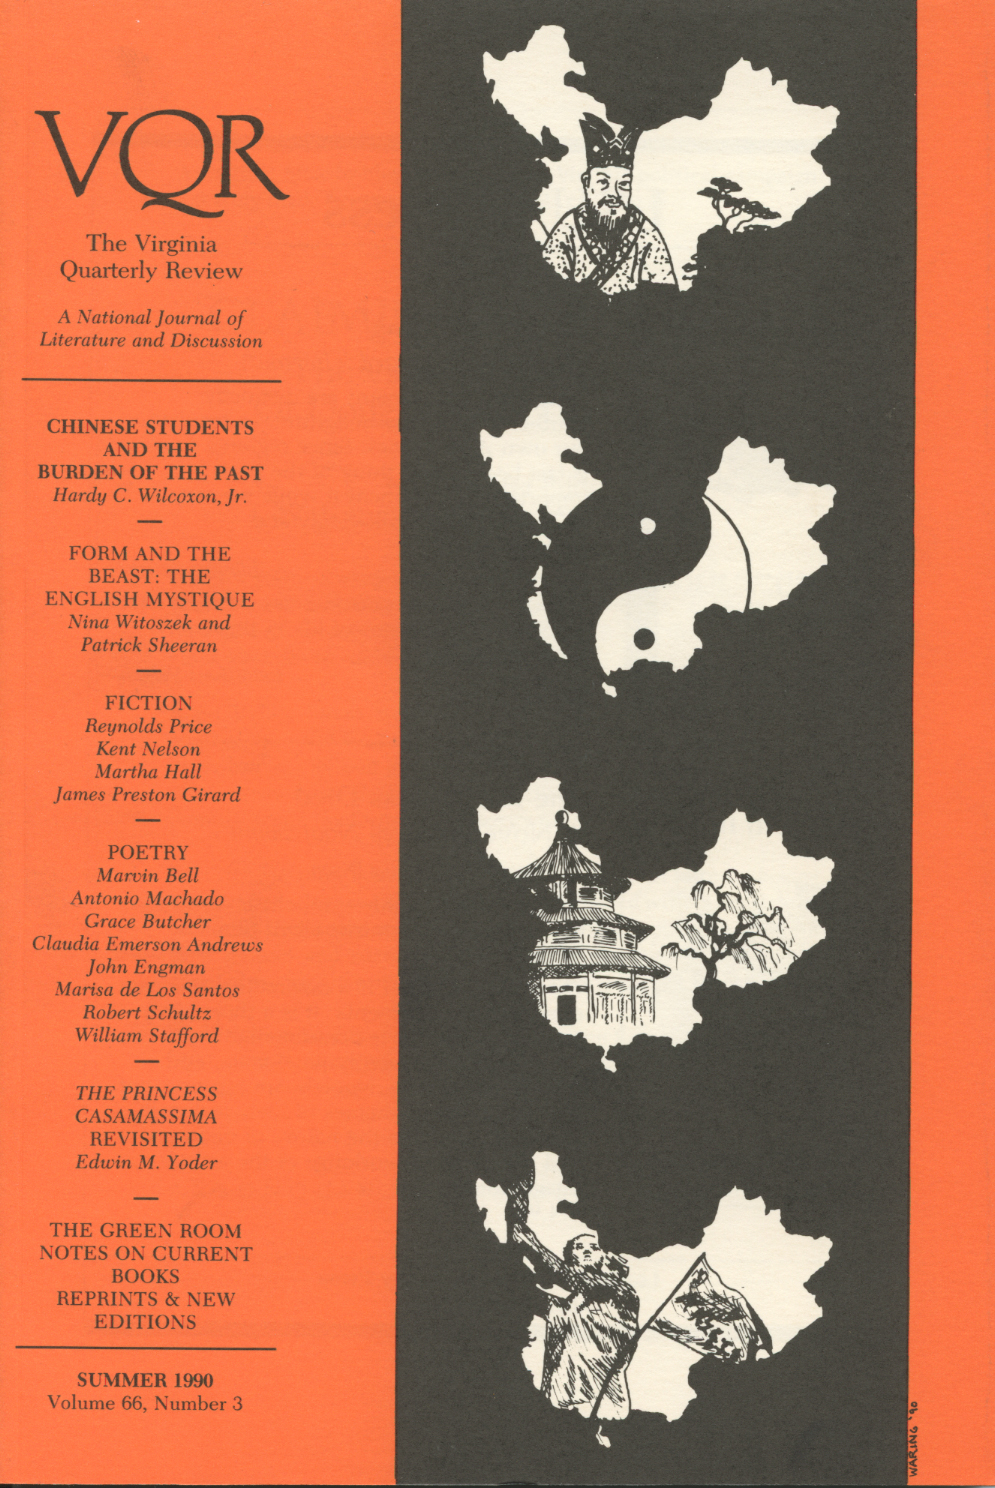 Virginia Quarterly Review, Summer 1990 cover